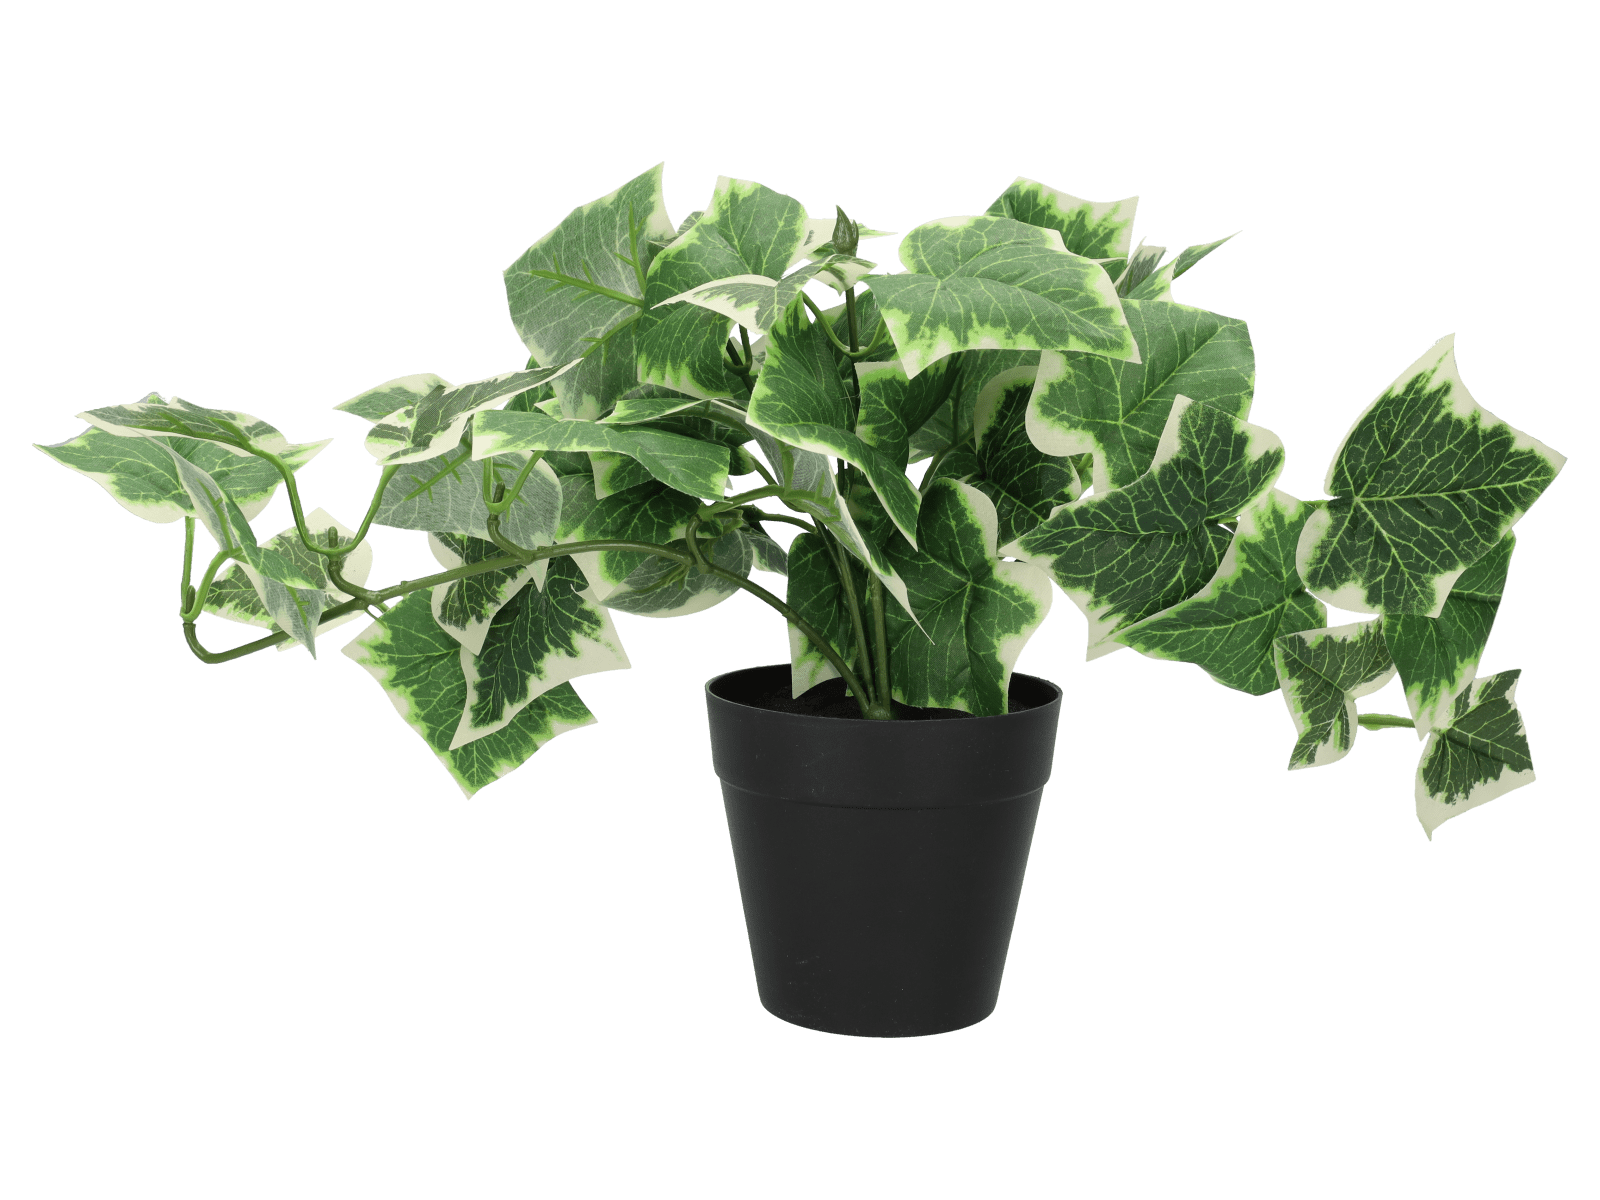 Plante artificielle – 14cm – green1 - Wibra